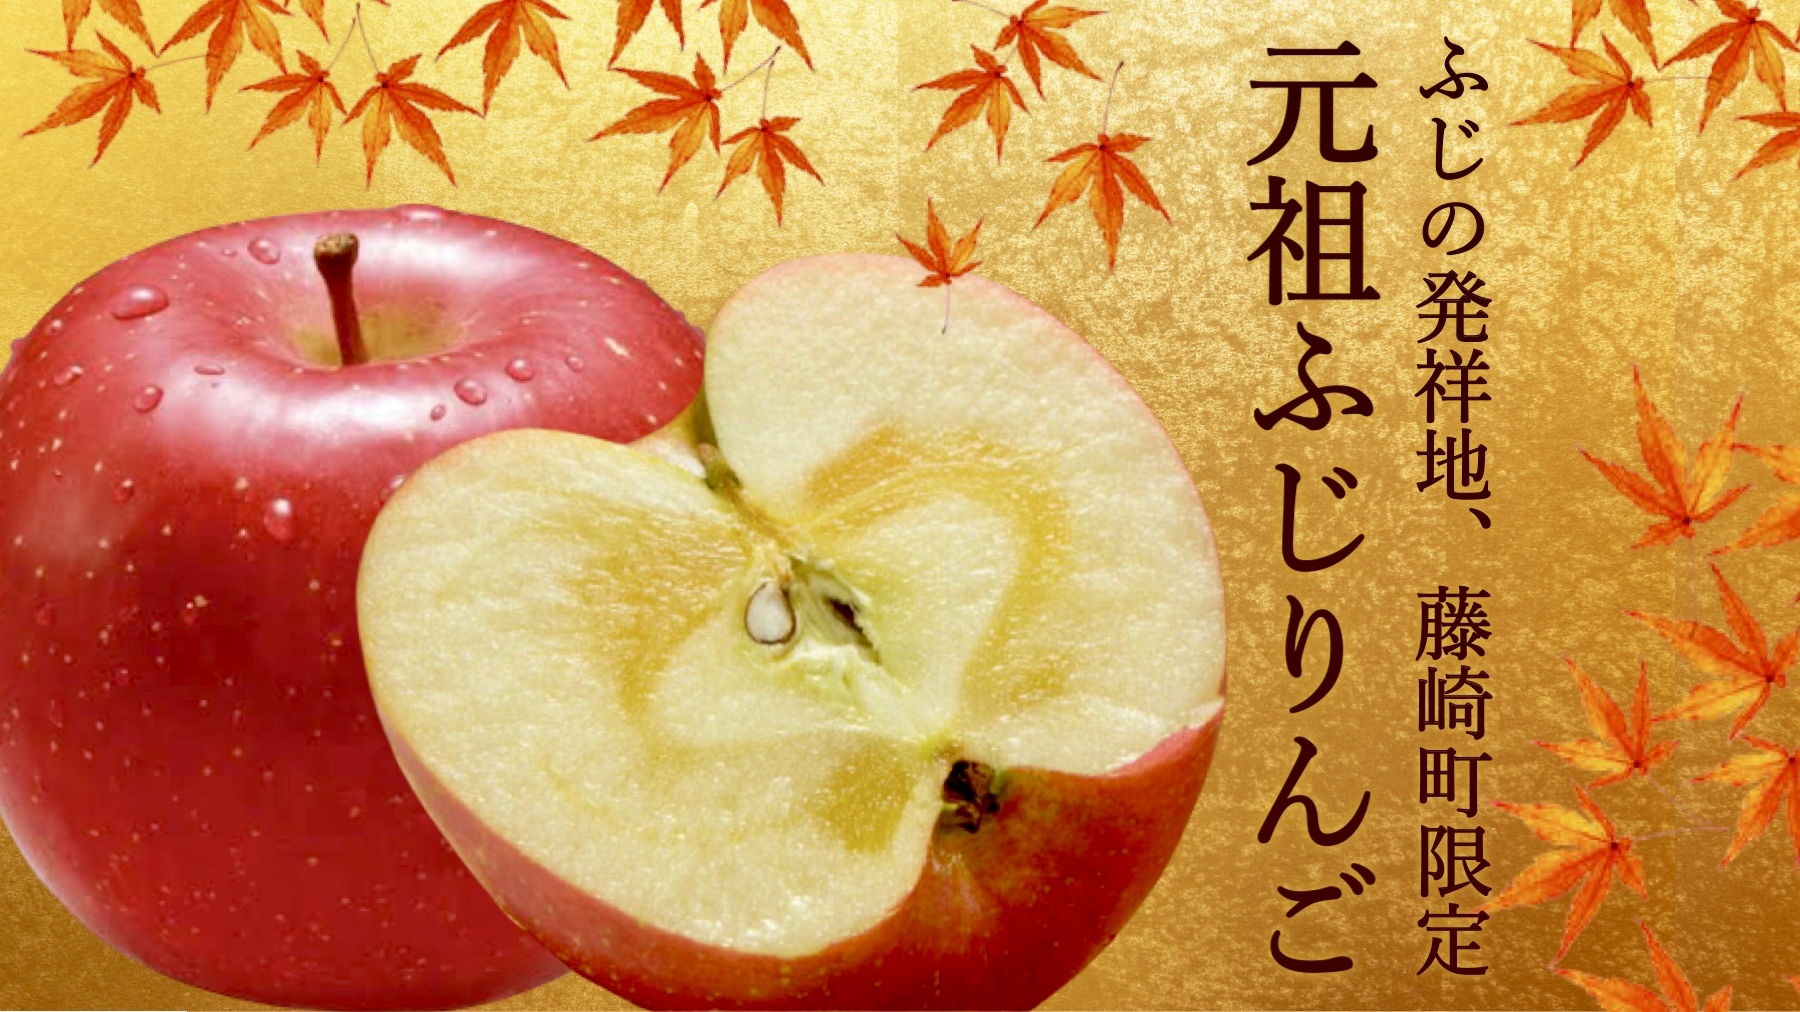 りんご 生産 量 ランキング